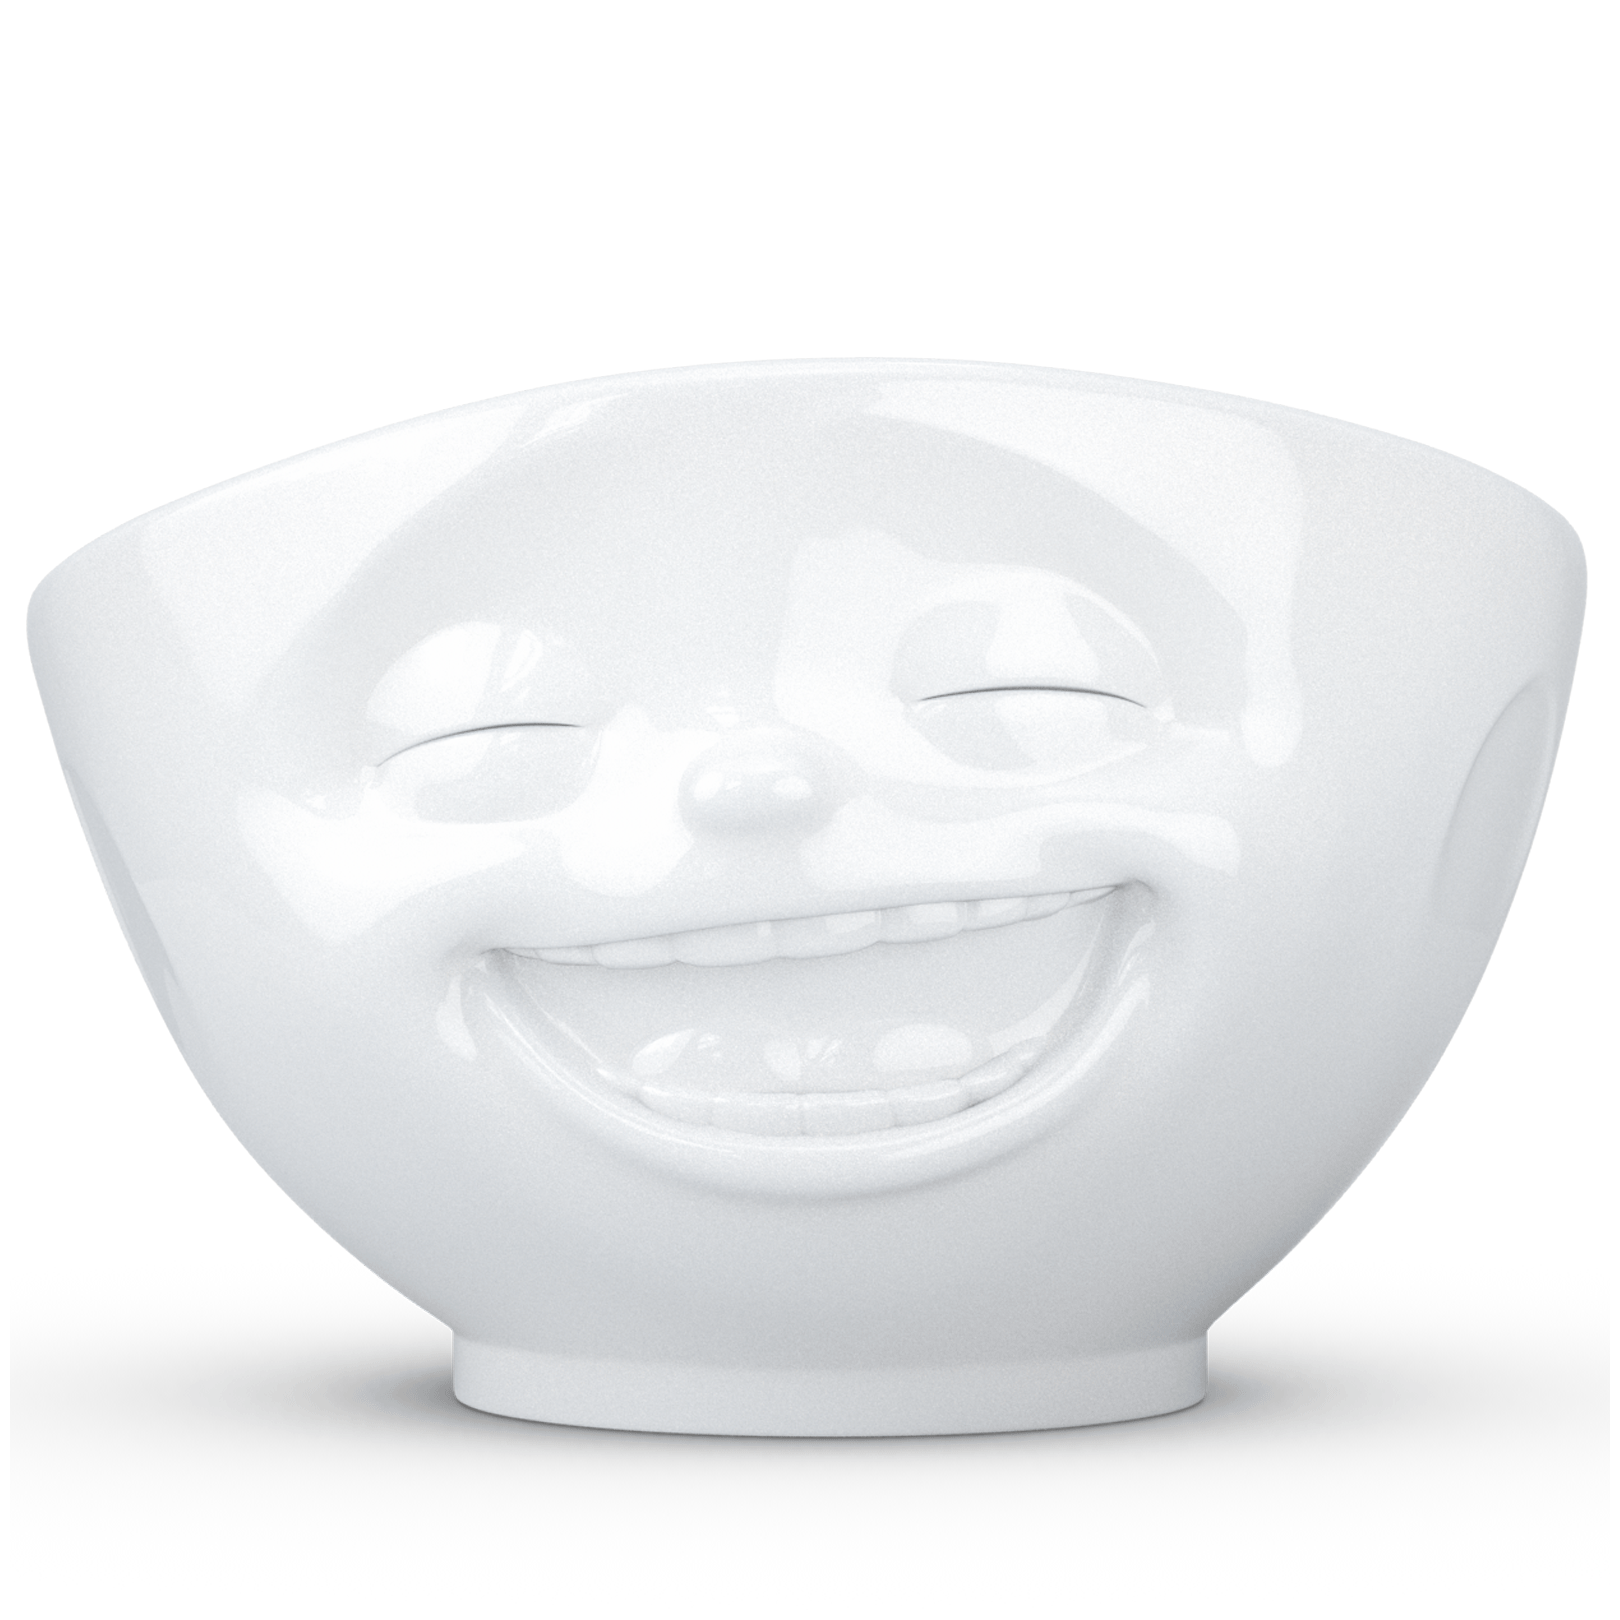 Miska porcelanowa 1000 ml -Laughing